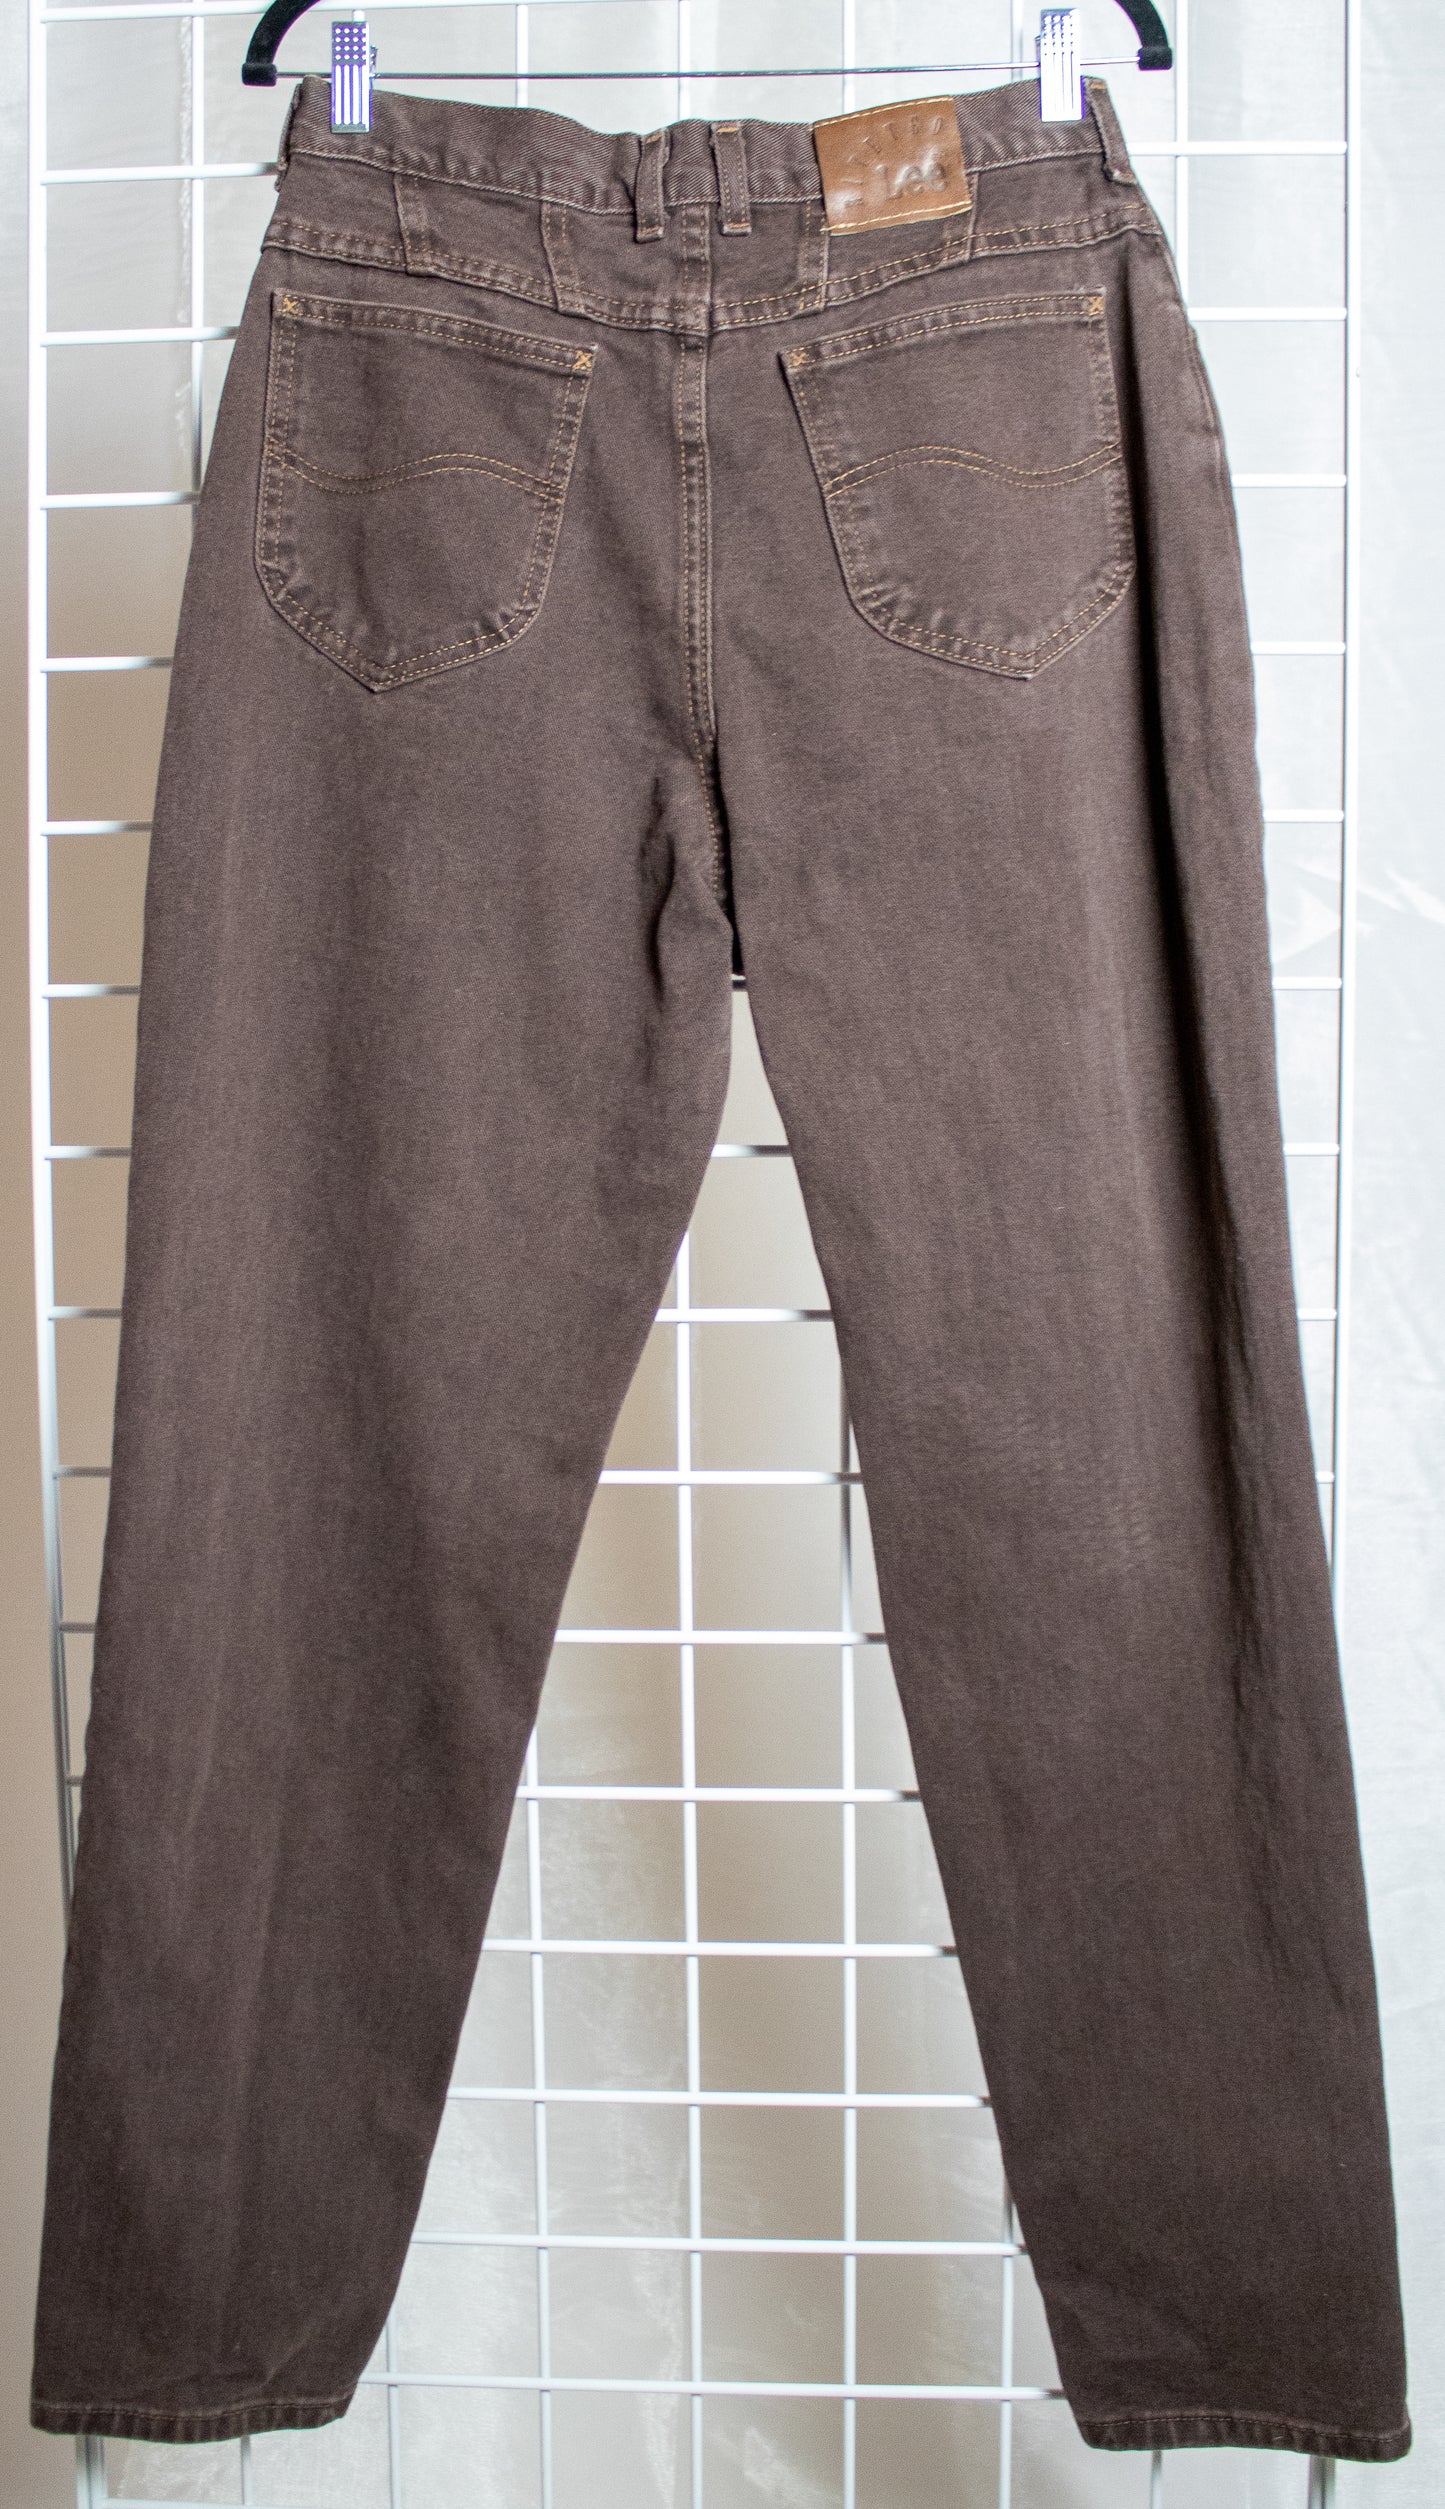 Brown Lee Jeans - 29x31